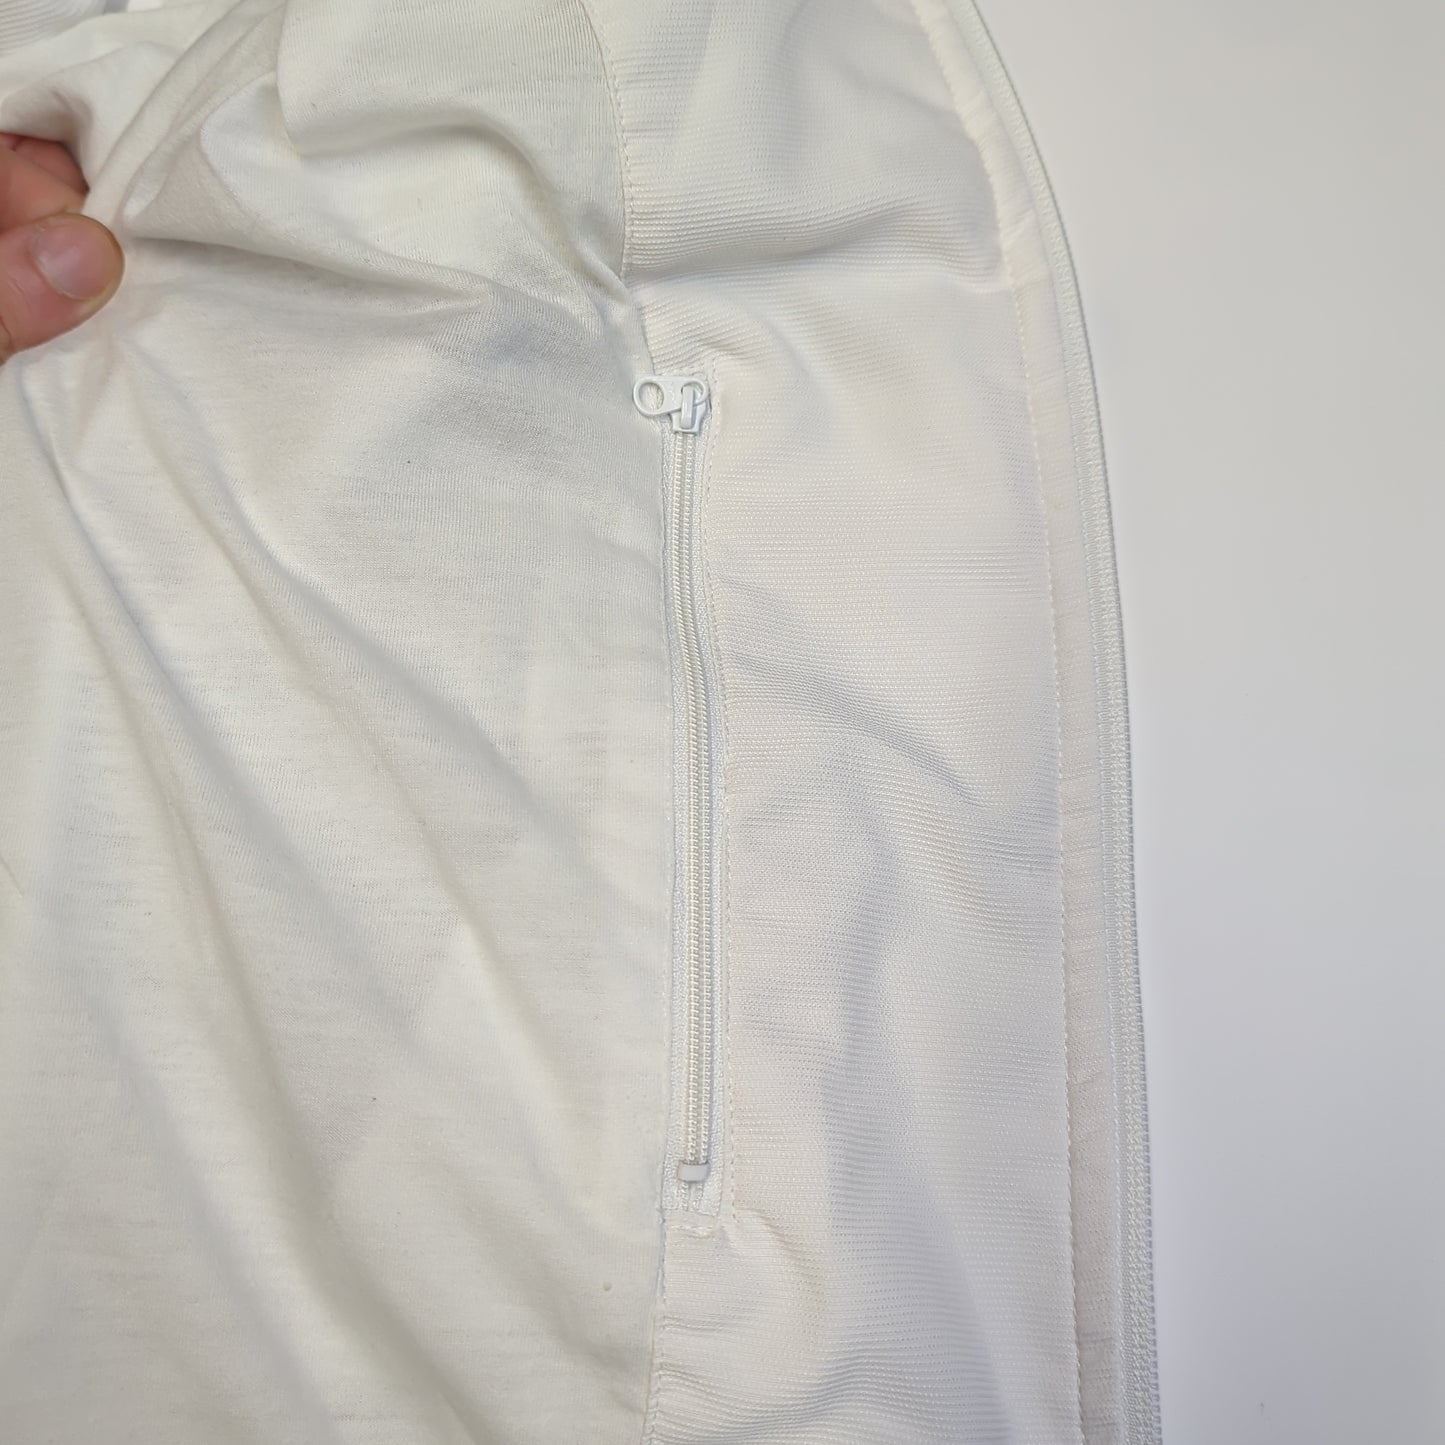 Nike Vintage White Track Jacket Men Size Large